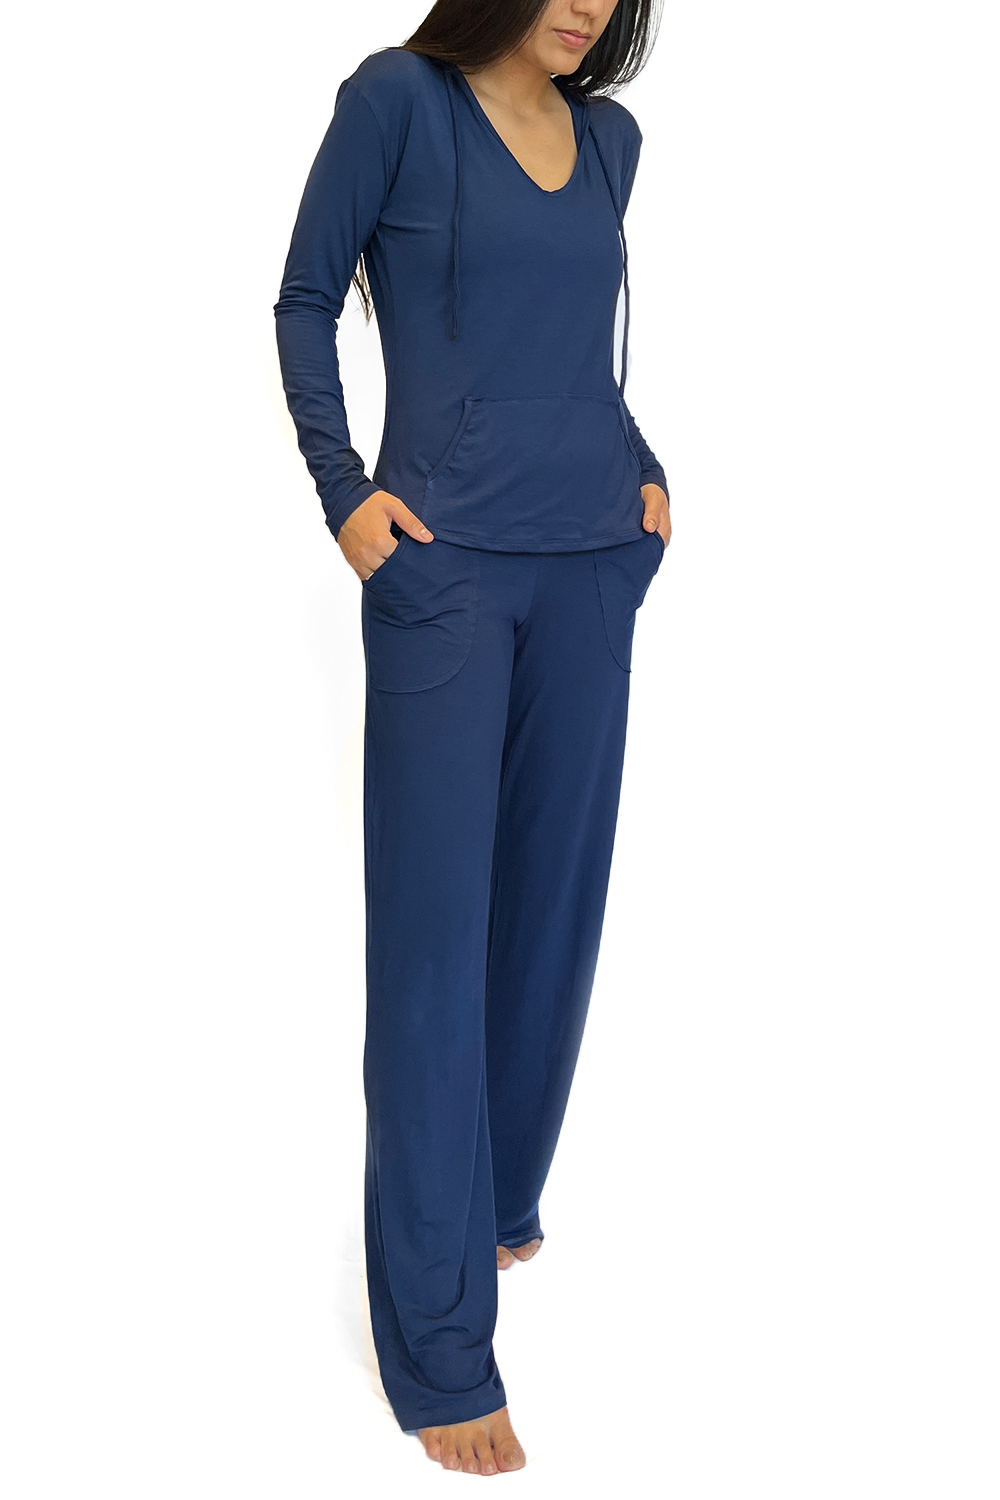 Bora-Bora Comfy Pants, Navy Blue, Viscose